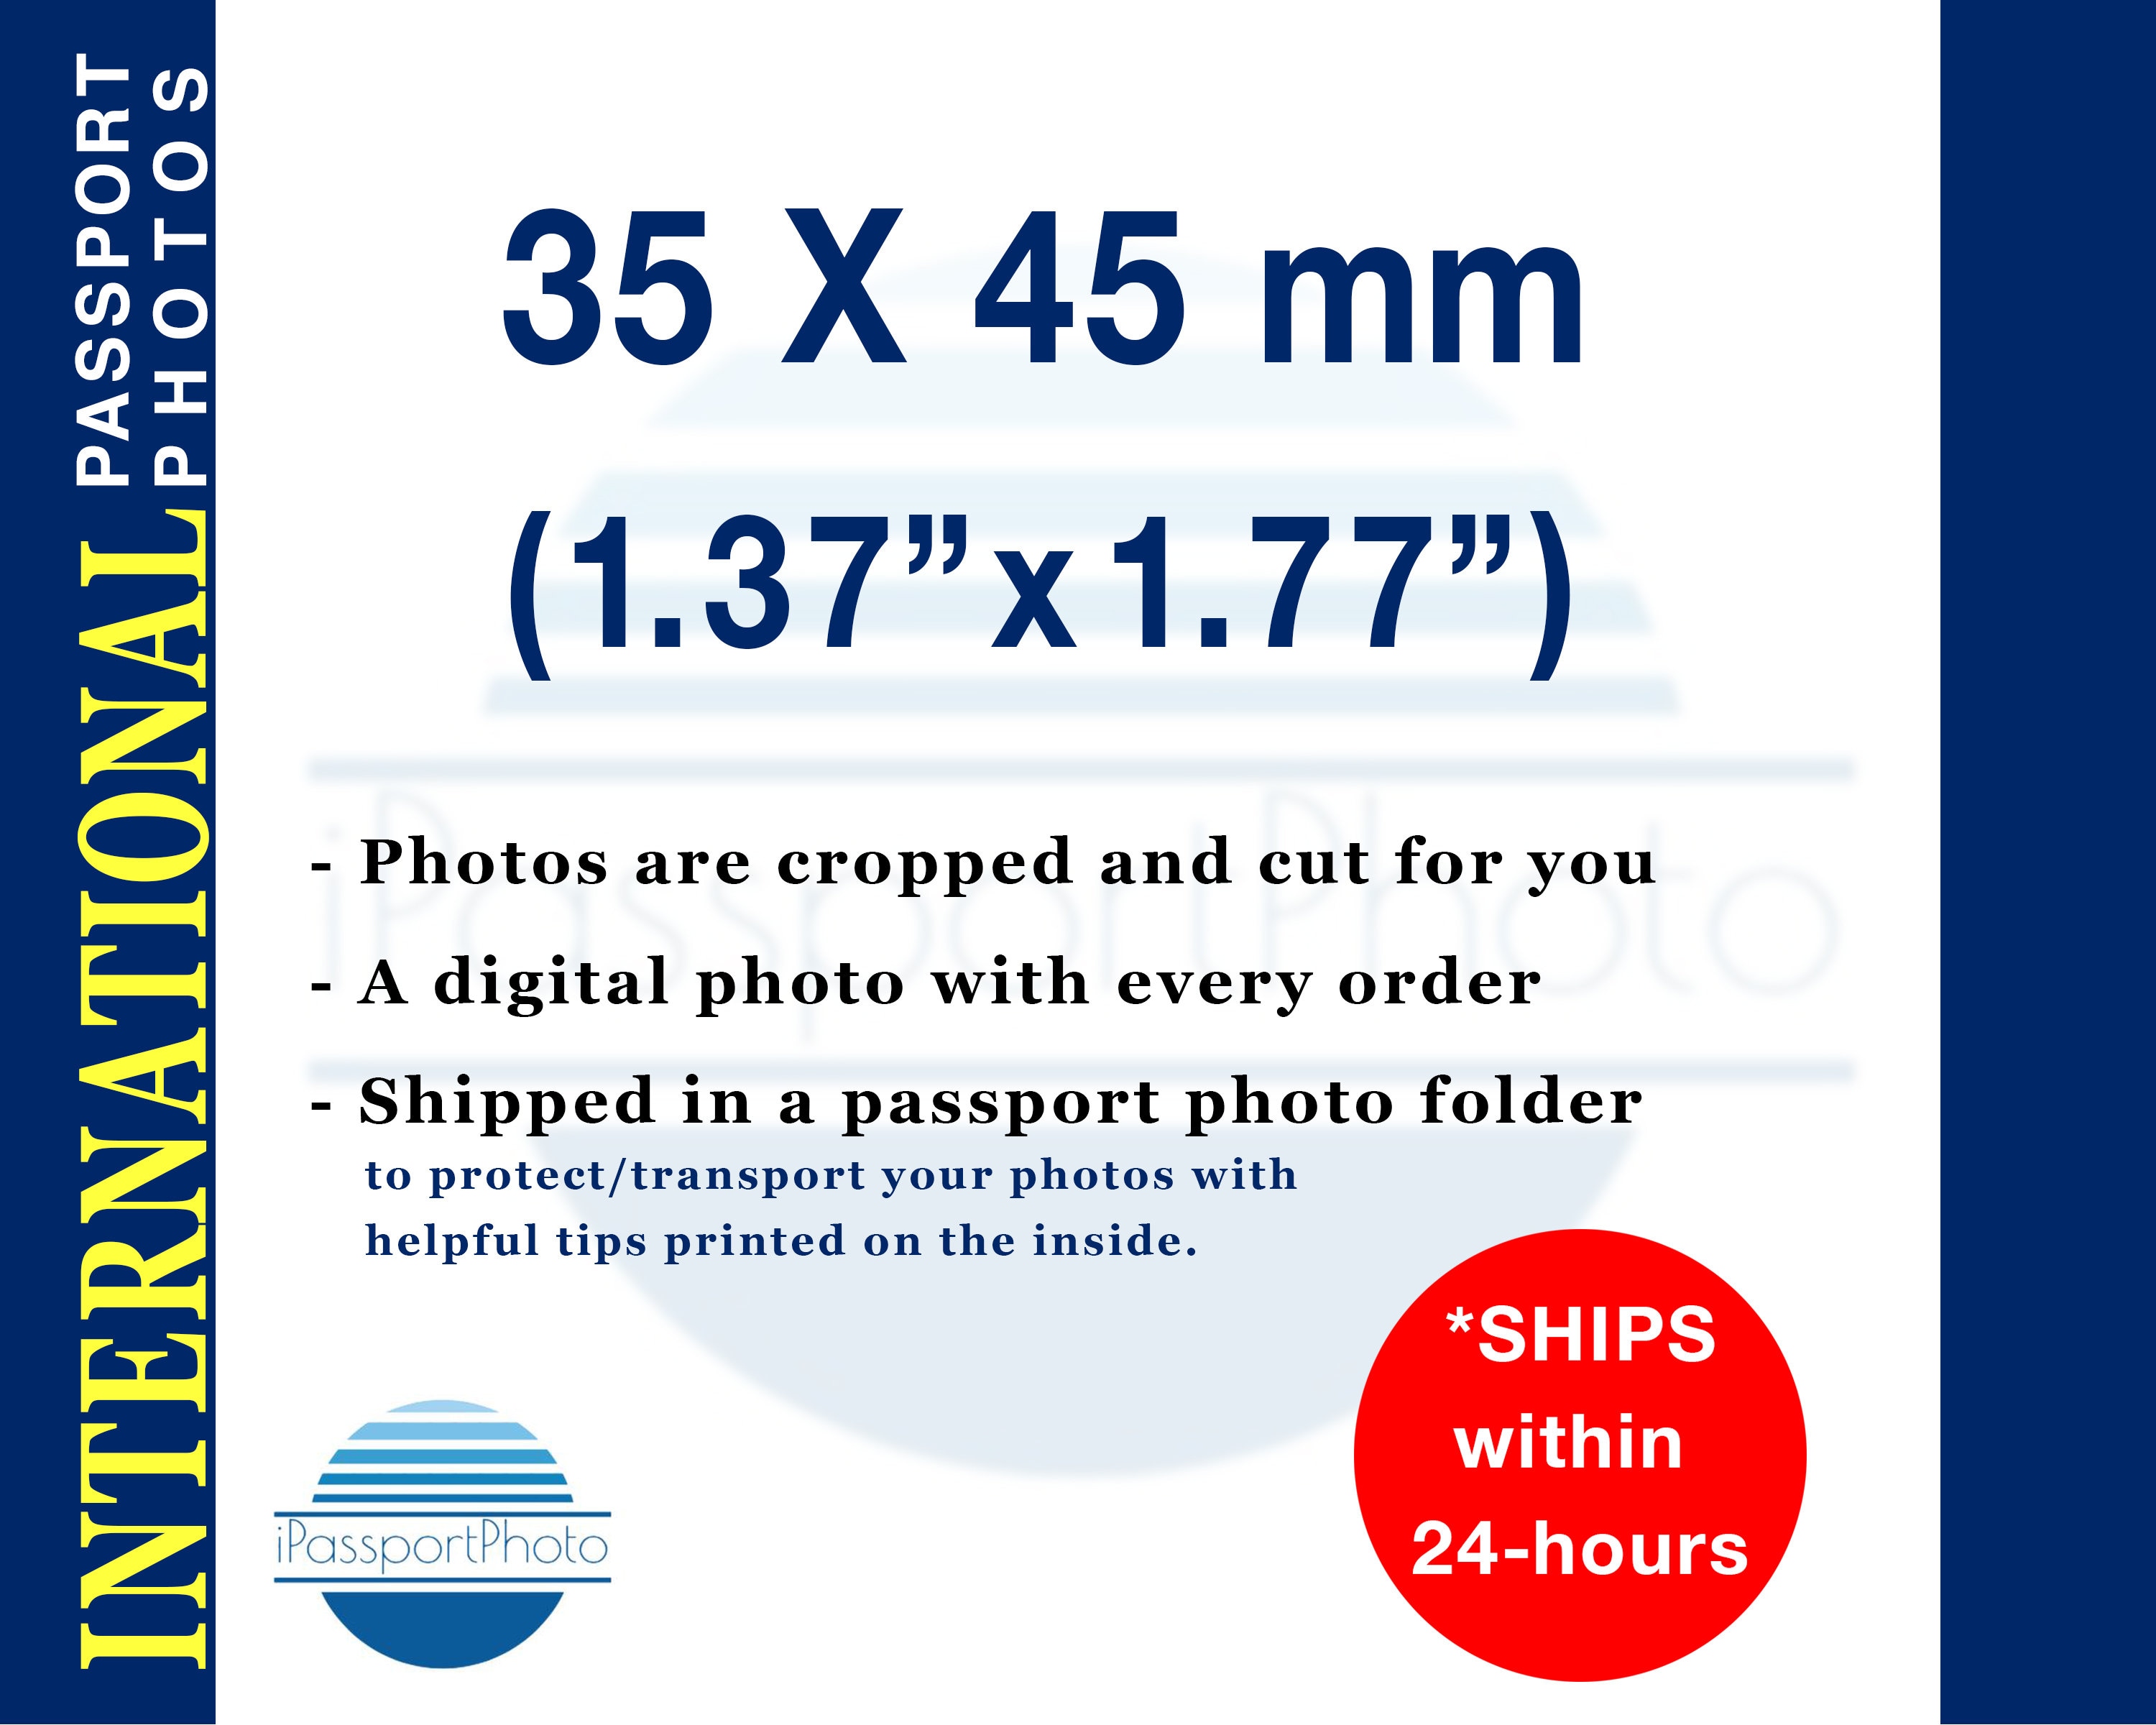 35X45 passport photo cutter passprots passport photo cutter id